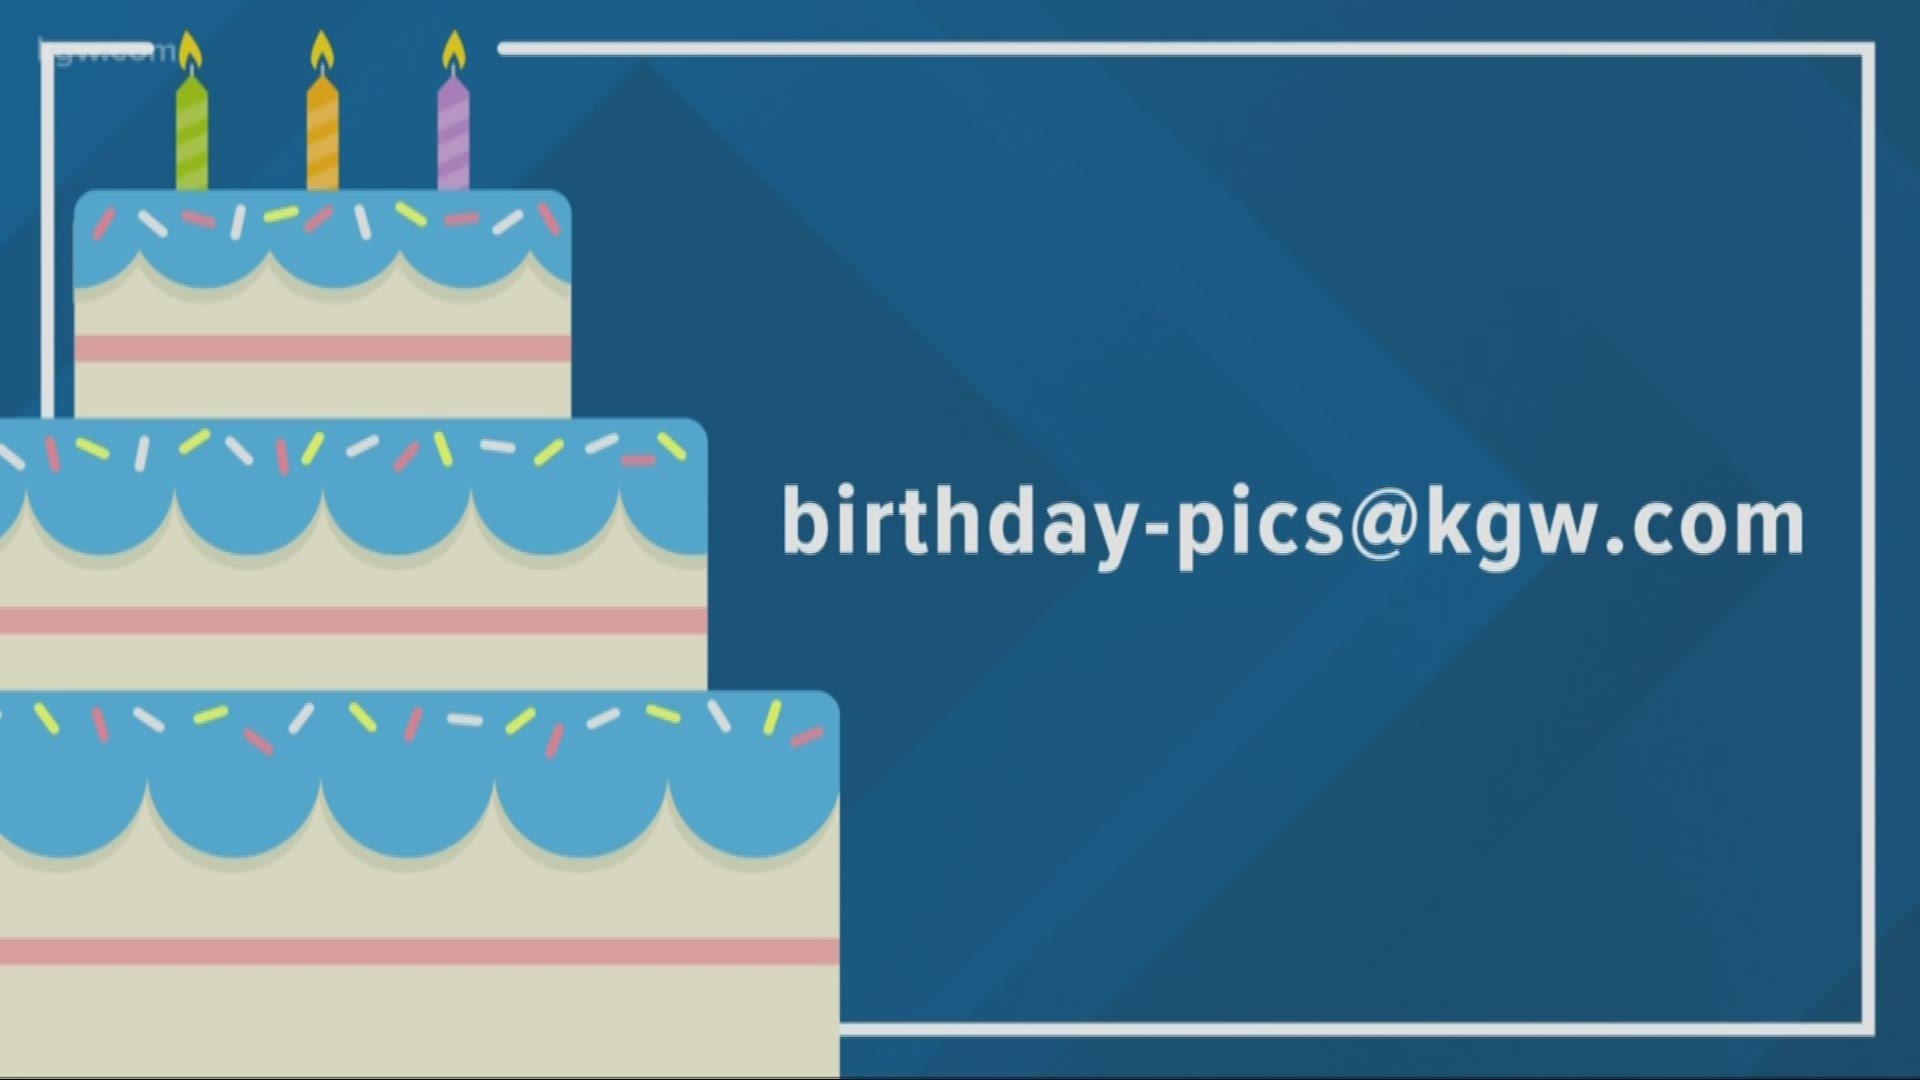 KGW viewer birthdays: 2-19-19